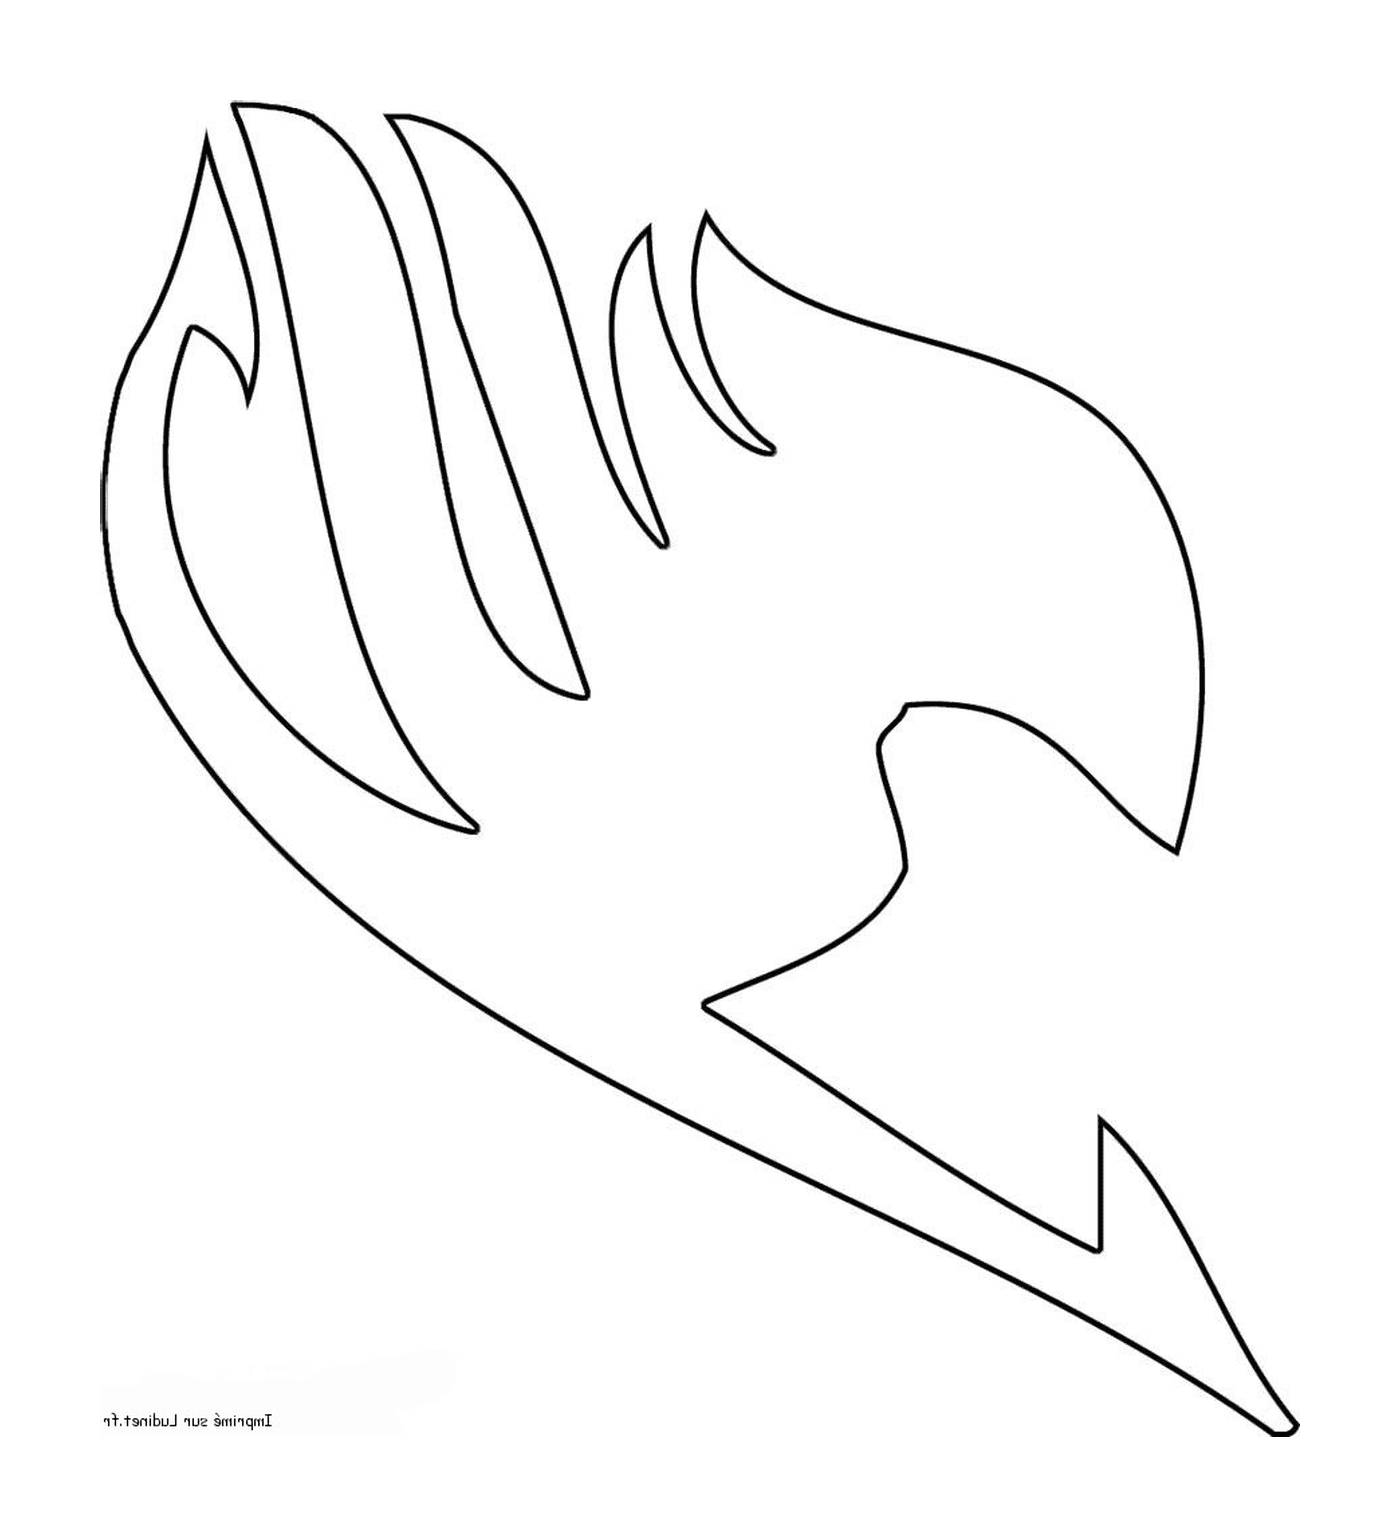  Fairy Tail's logo 